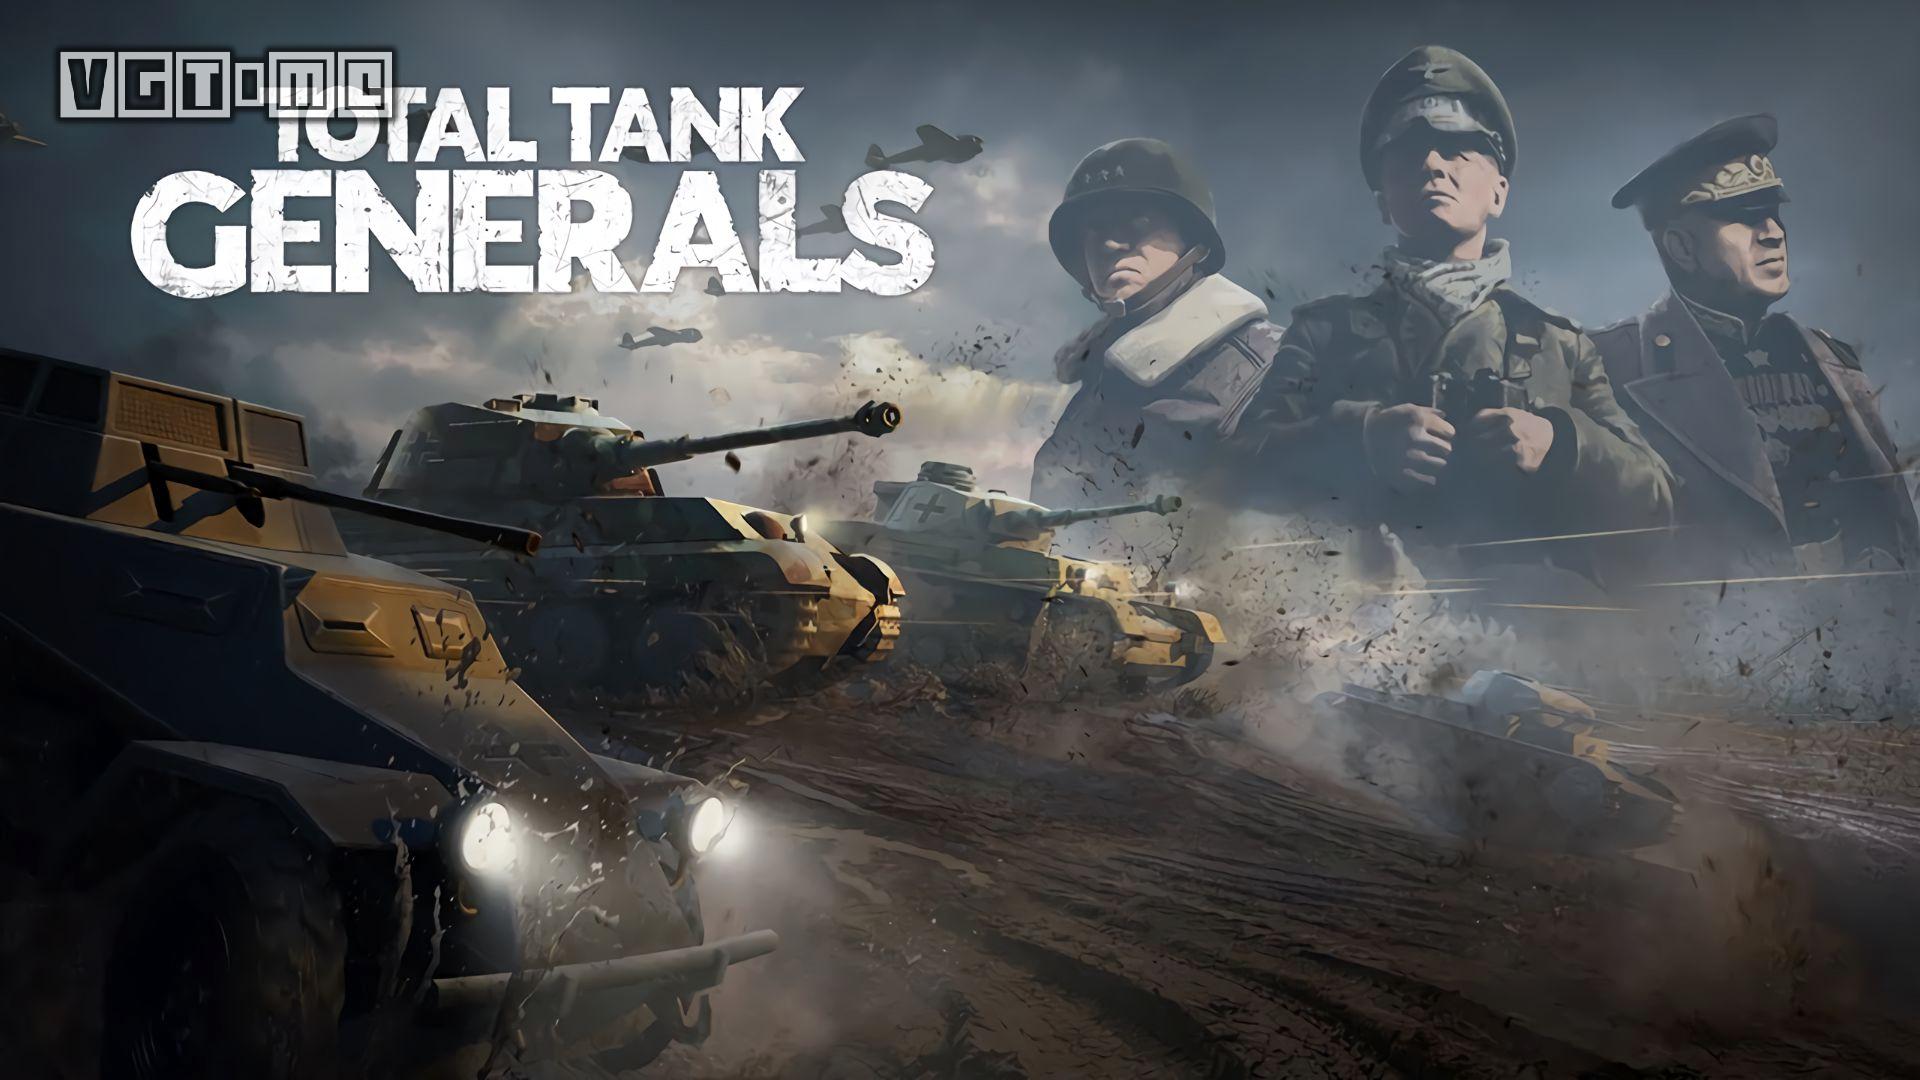 《全面坦克戰略官》將於2023年3月30日發售